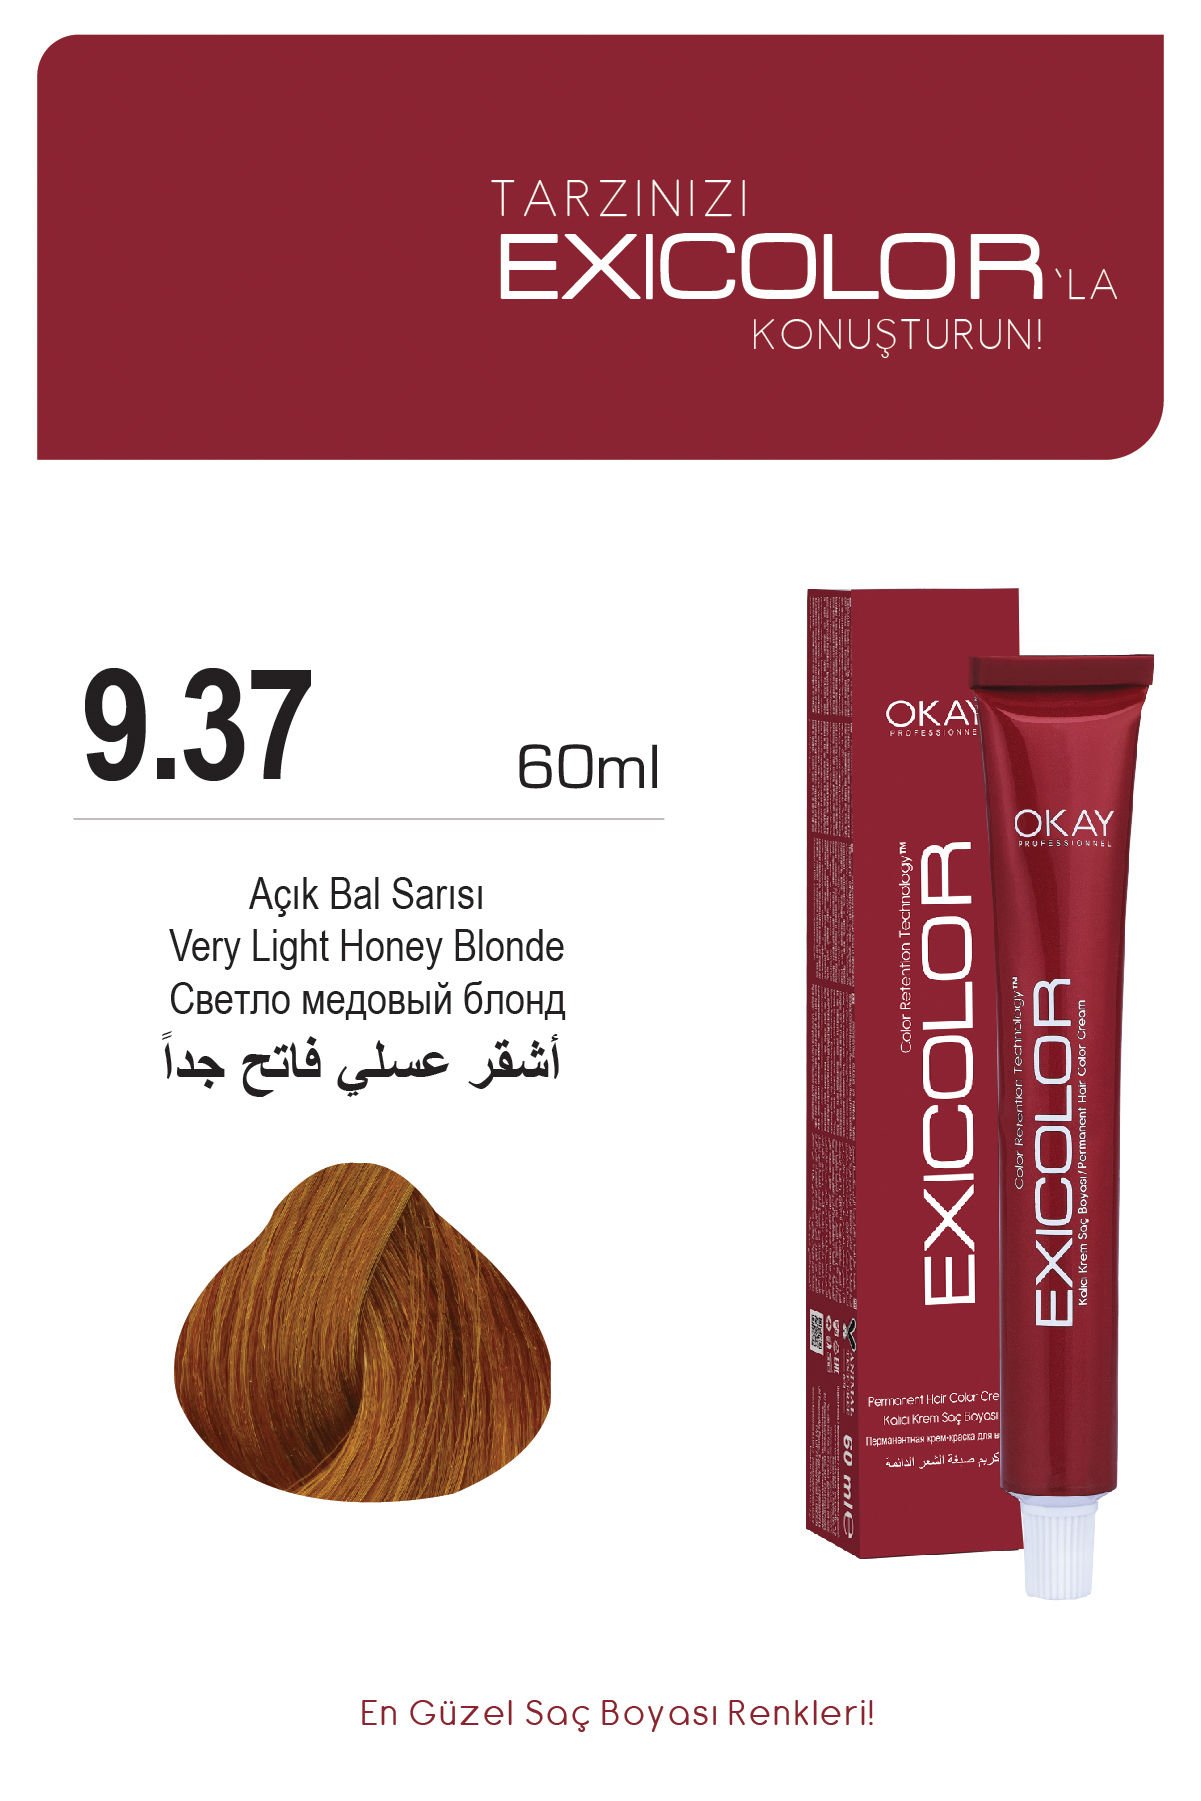 Exicolor 9.37 Açık Bal Sarısı - Kalıcı Krem Saç Boyası 60 ml Tüp